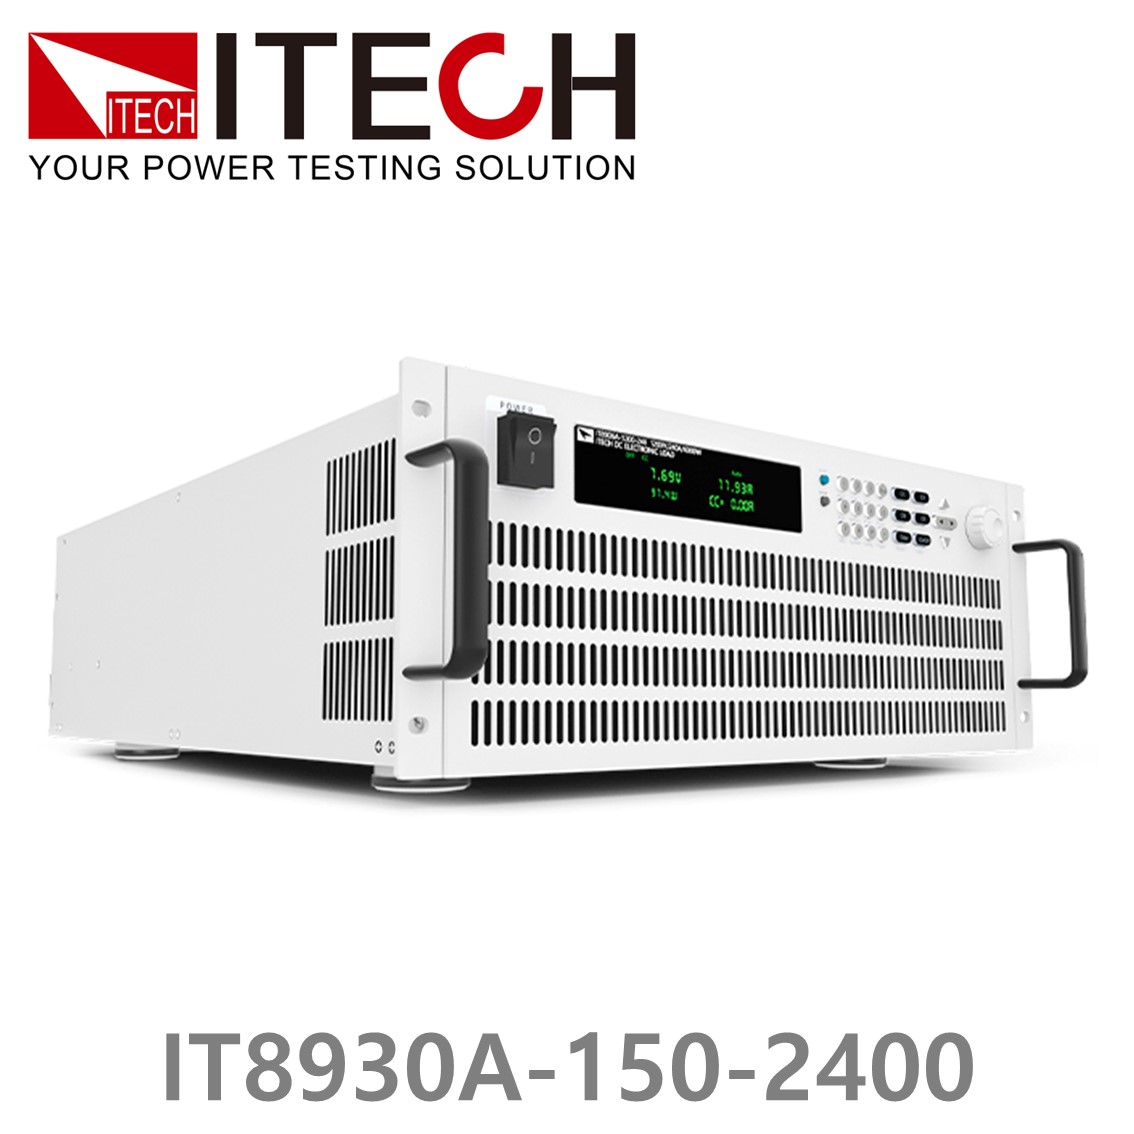 [ ITECH ] IT8930A-150-2400  고성능 고전력 DC 전자로드 150V/2400A/30kW (27U)